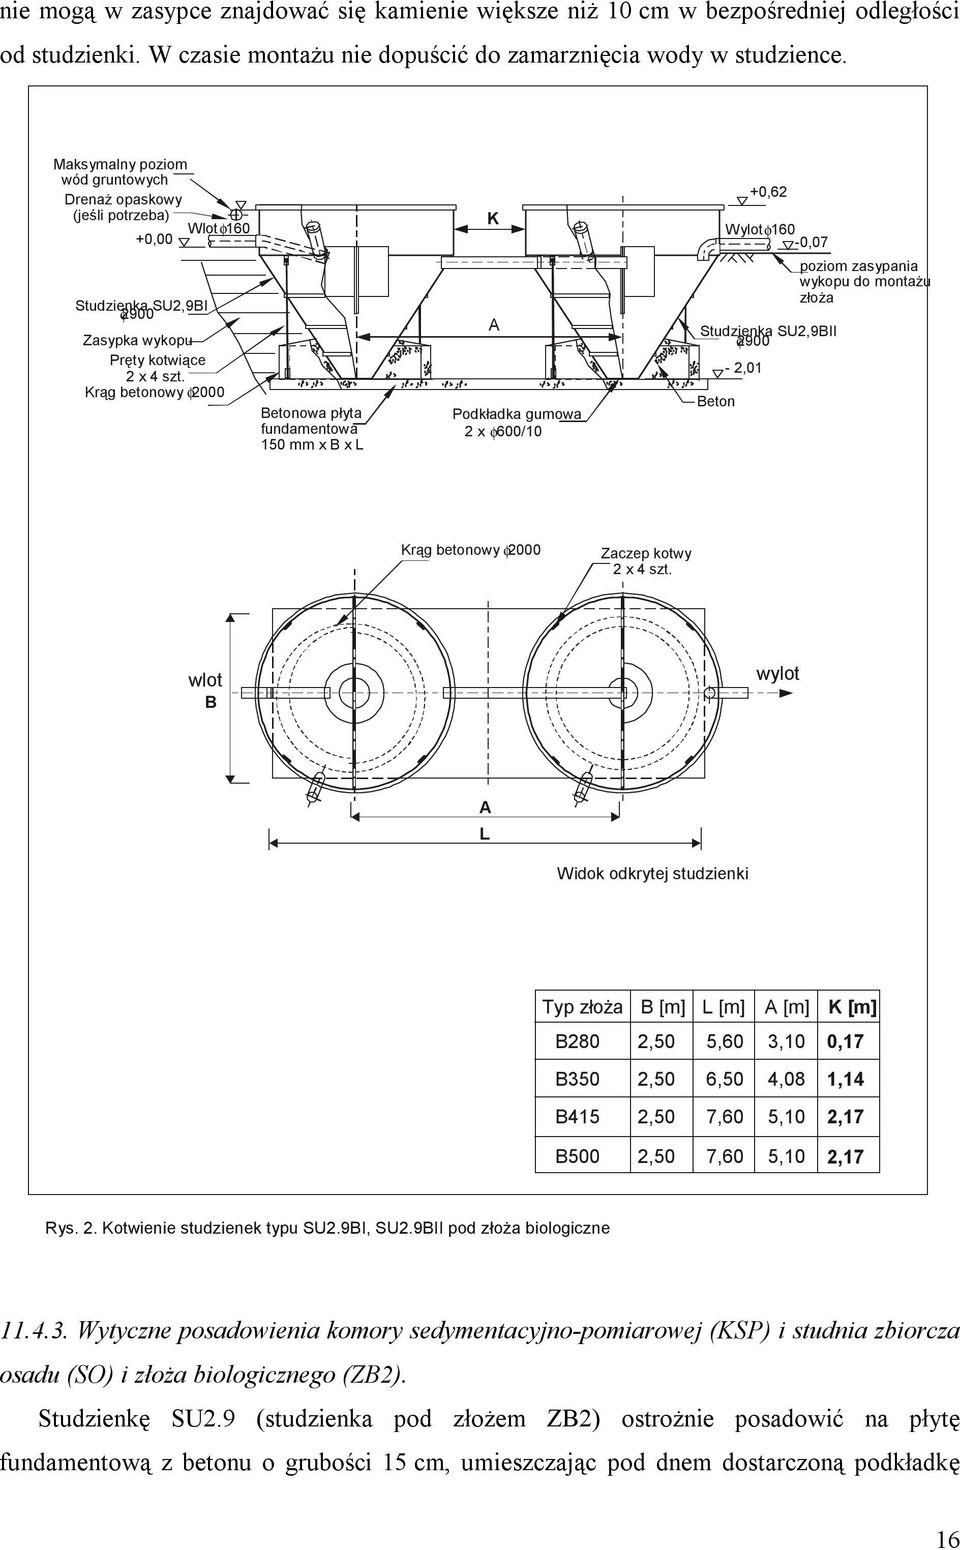 Krąg betonowy φ2000 Betonowa płyta fundamentowa 150 mm x B x L K A Podkładka gumowa 2 x 600/10 φ +0,62 Wylot φ160-0,07 Studzienka SU2,9BII φ2900 Beton - 2,01 poziom zasypania wykopu do montażu złoża